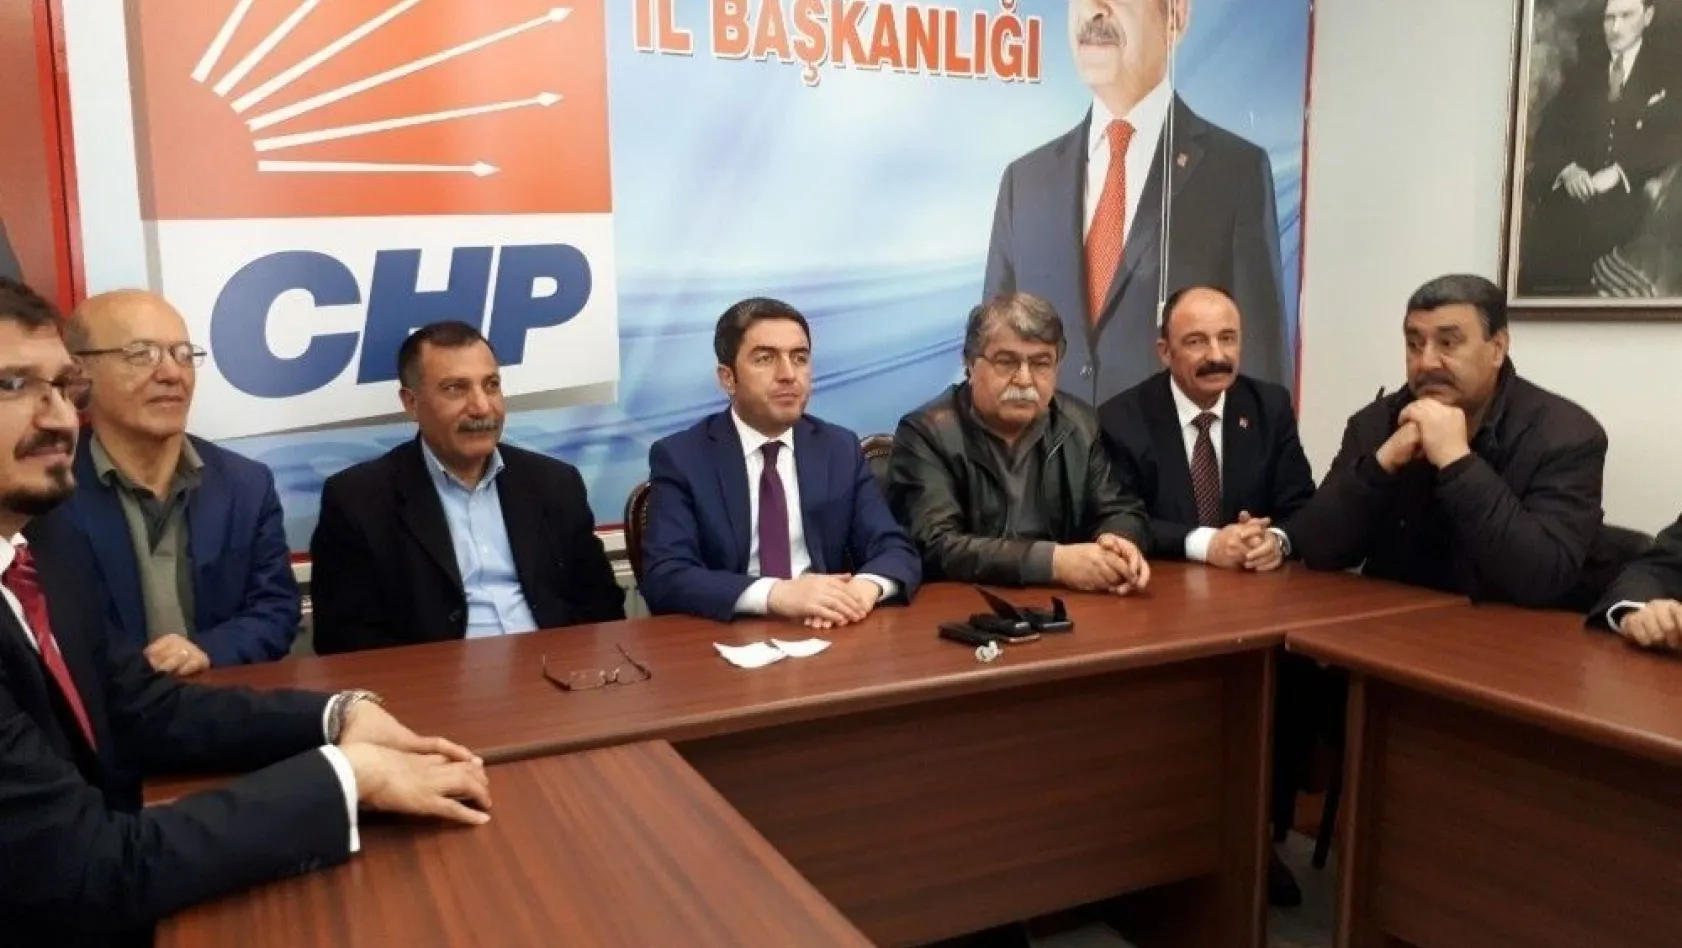 CHP ittifak yasasının iptali için Anayasa mahkemis'ne başvuracak
